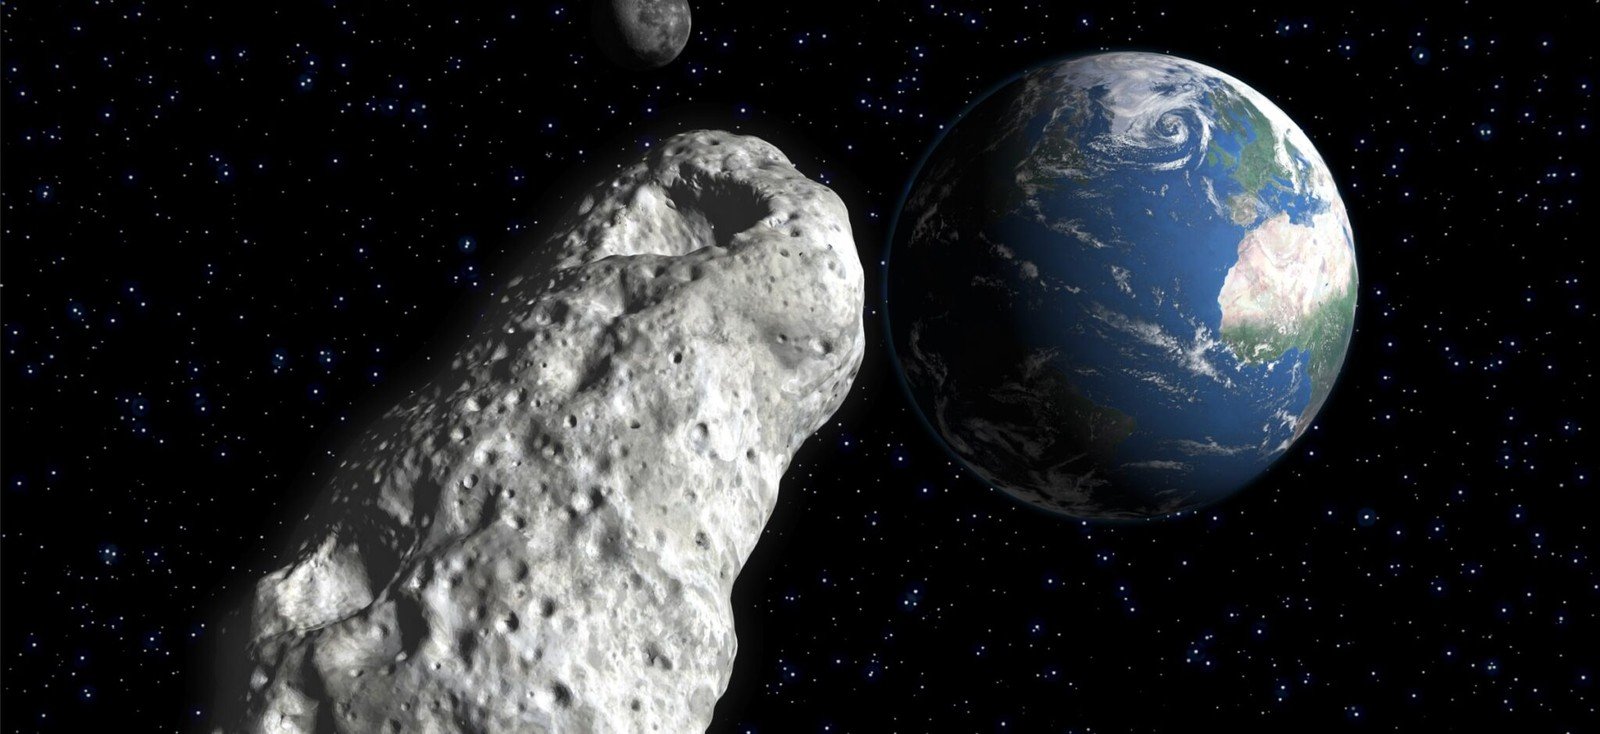 W stronę Ziemi zmierza hipotetyczna planetoida. Naukowcy symulują konsekwencje zderzenia